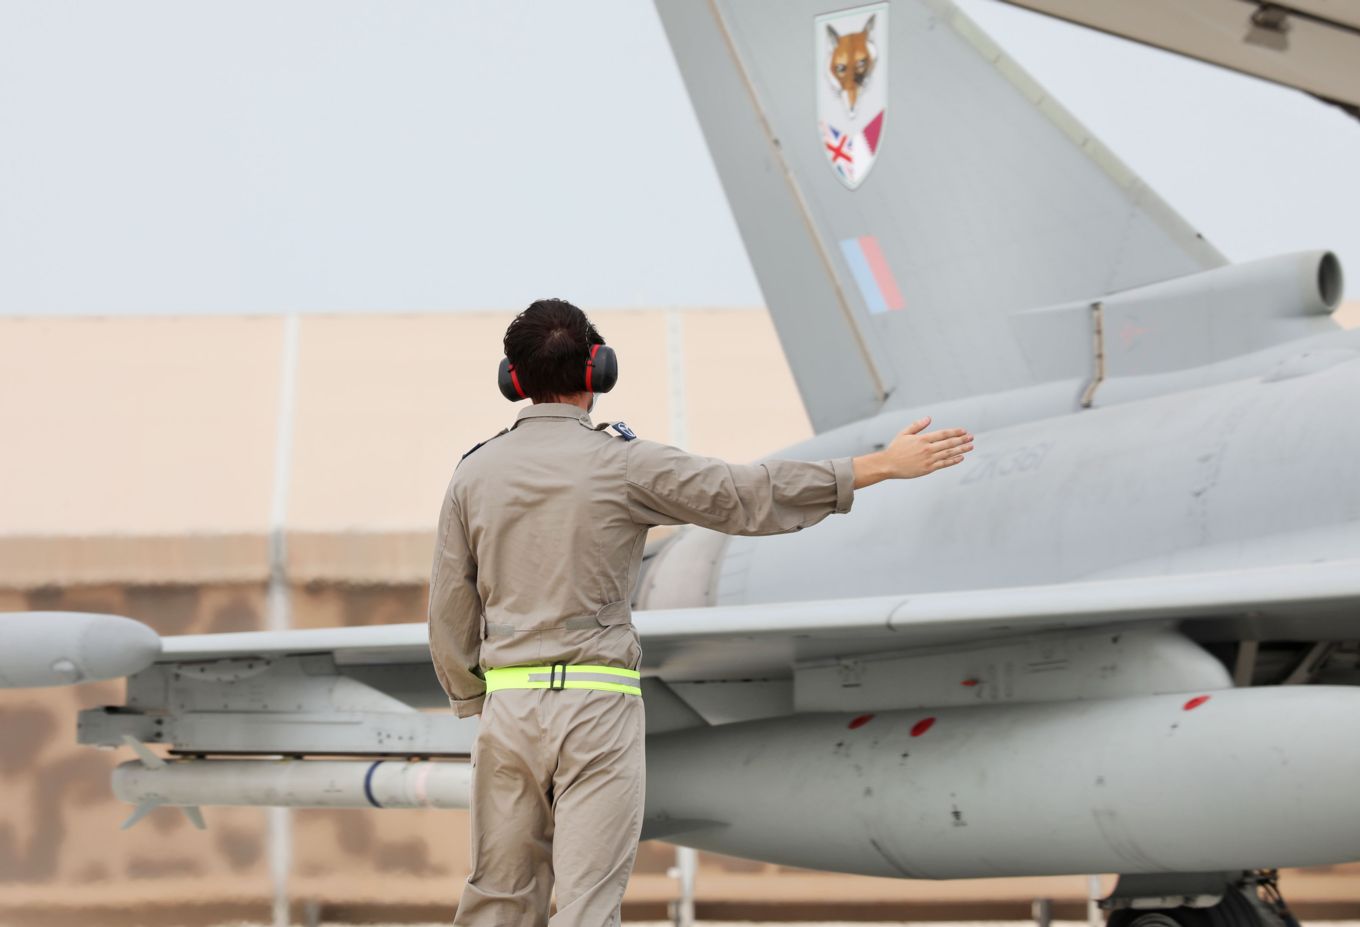 RAF Technician taxing a typhoon